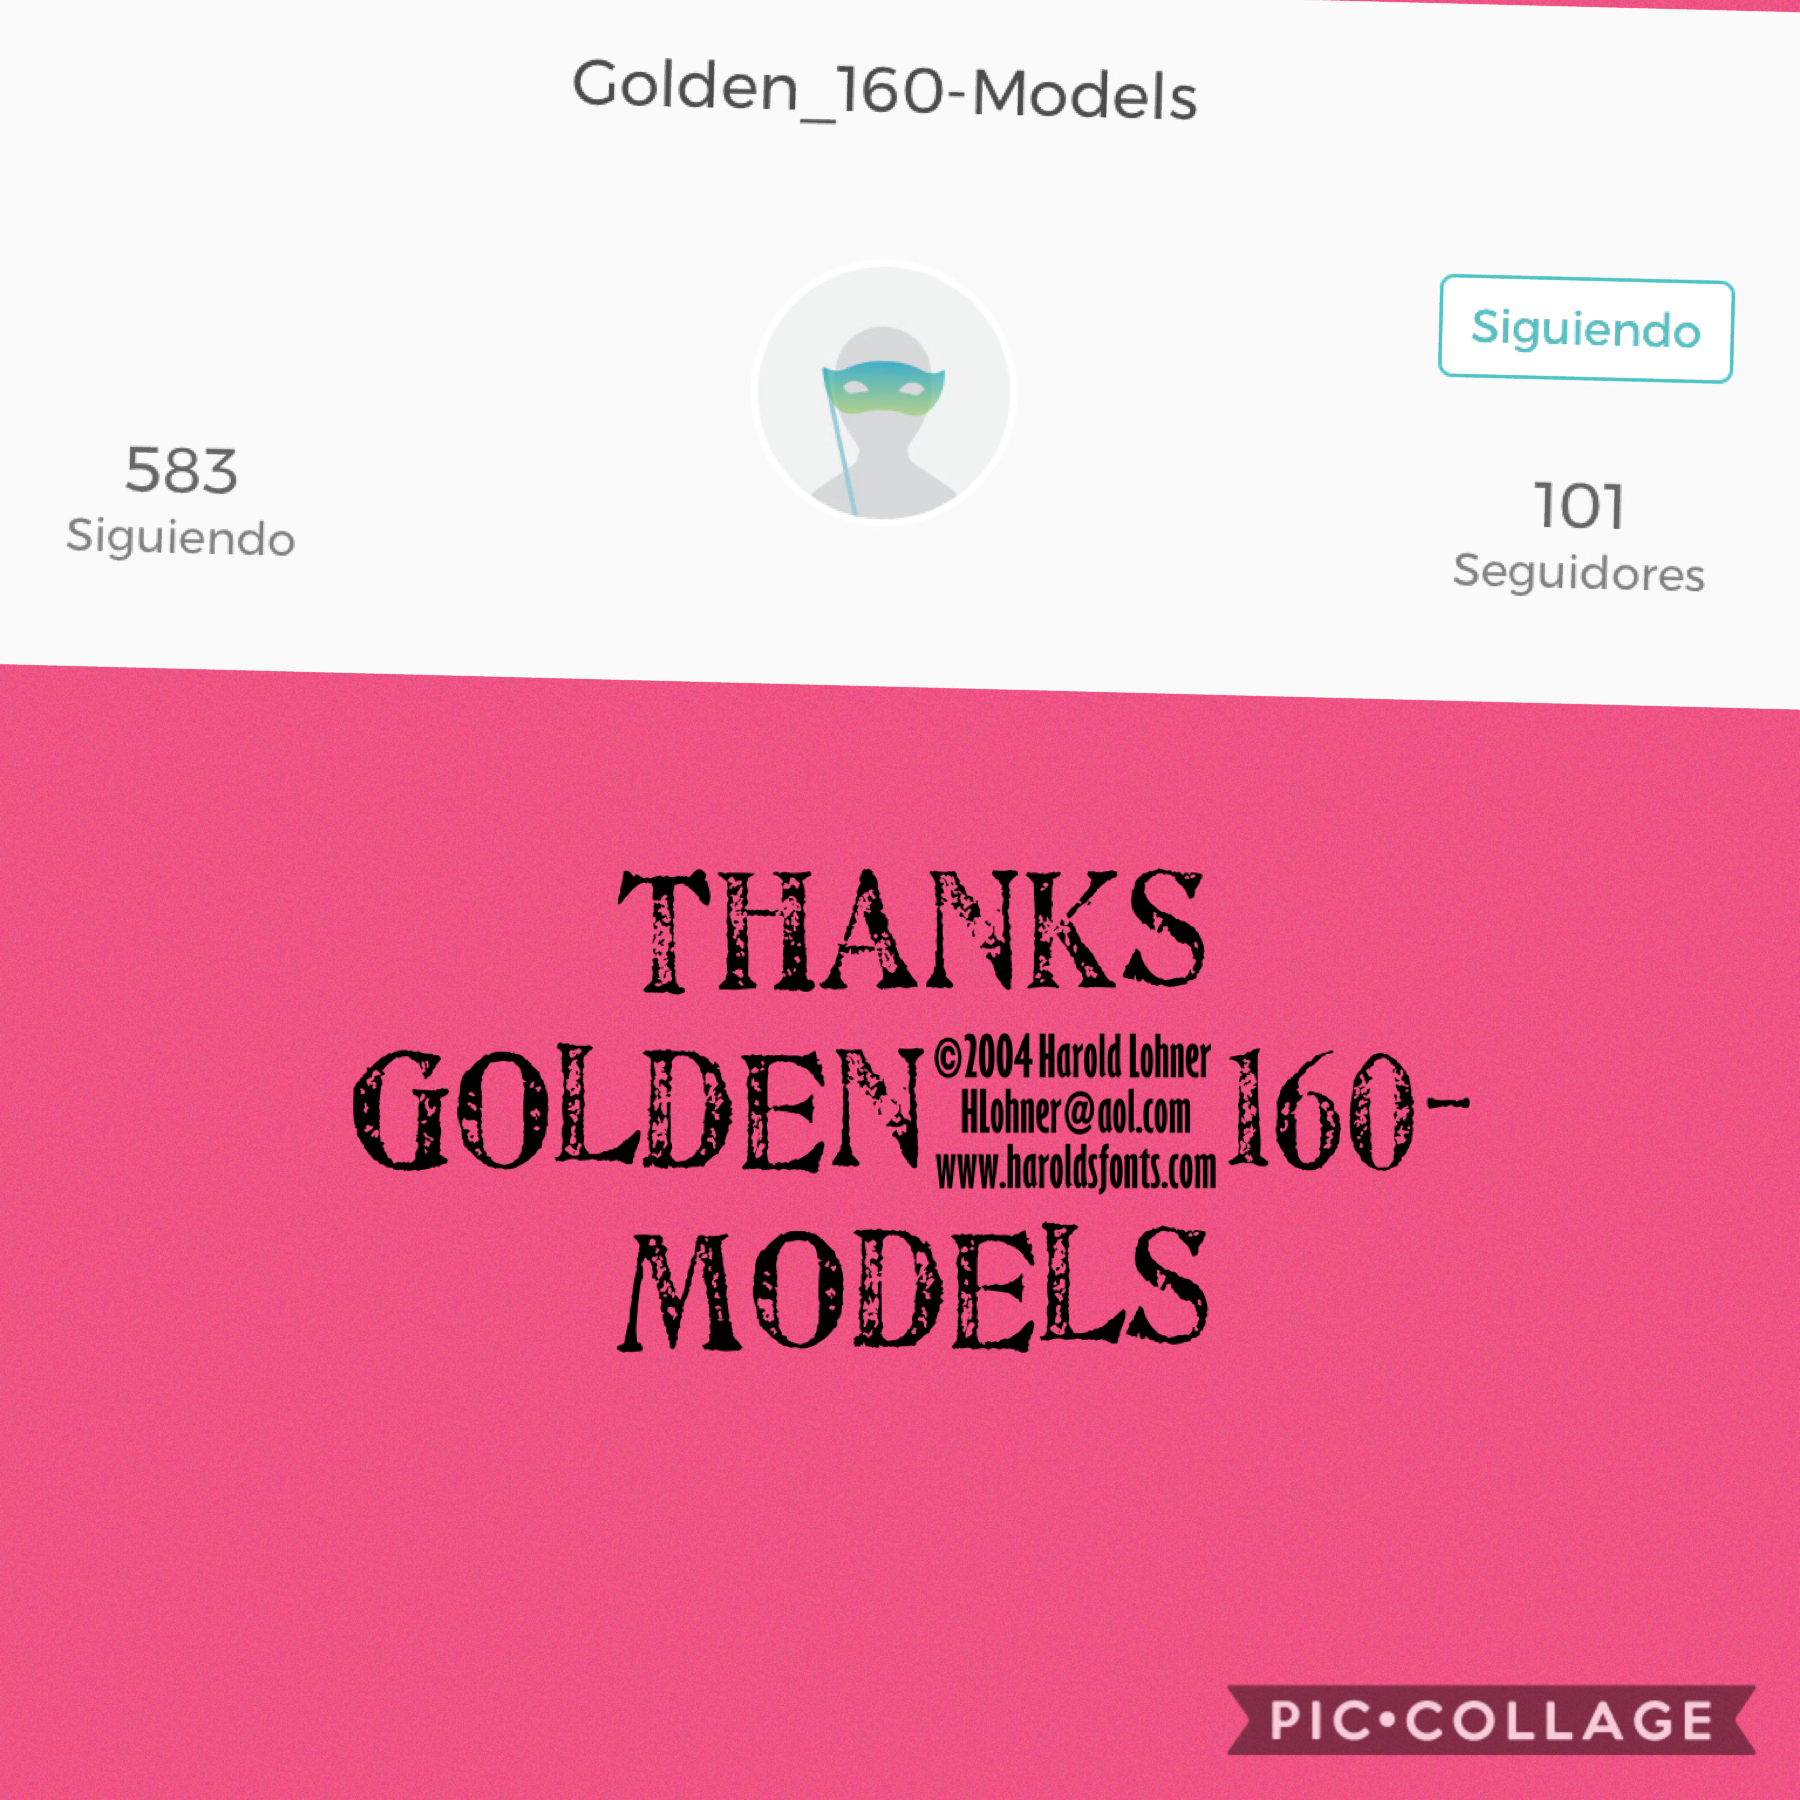 Golden_160-models